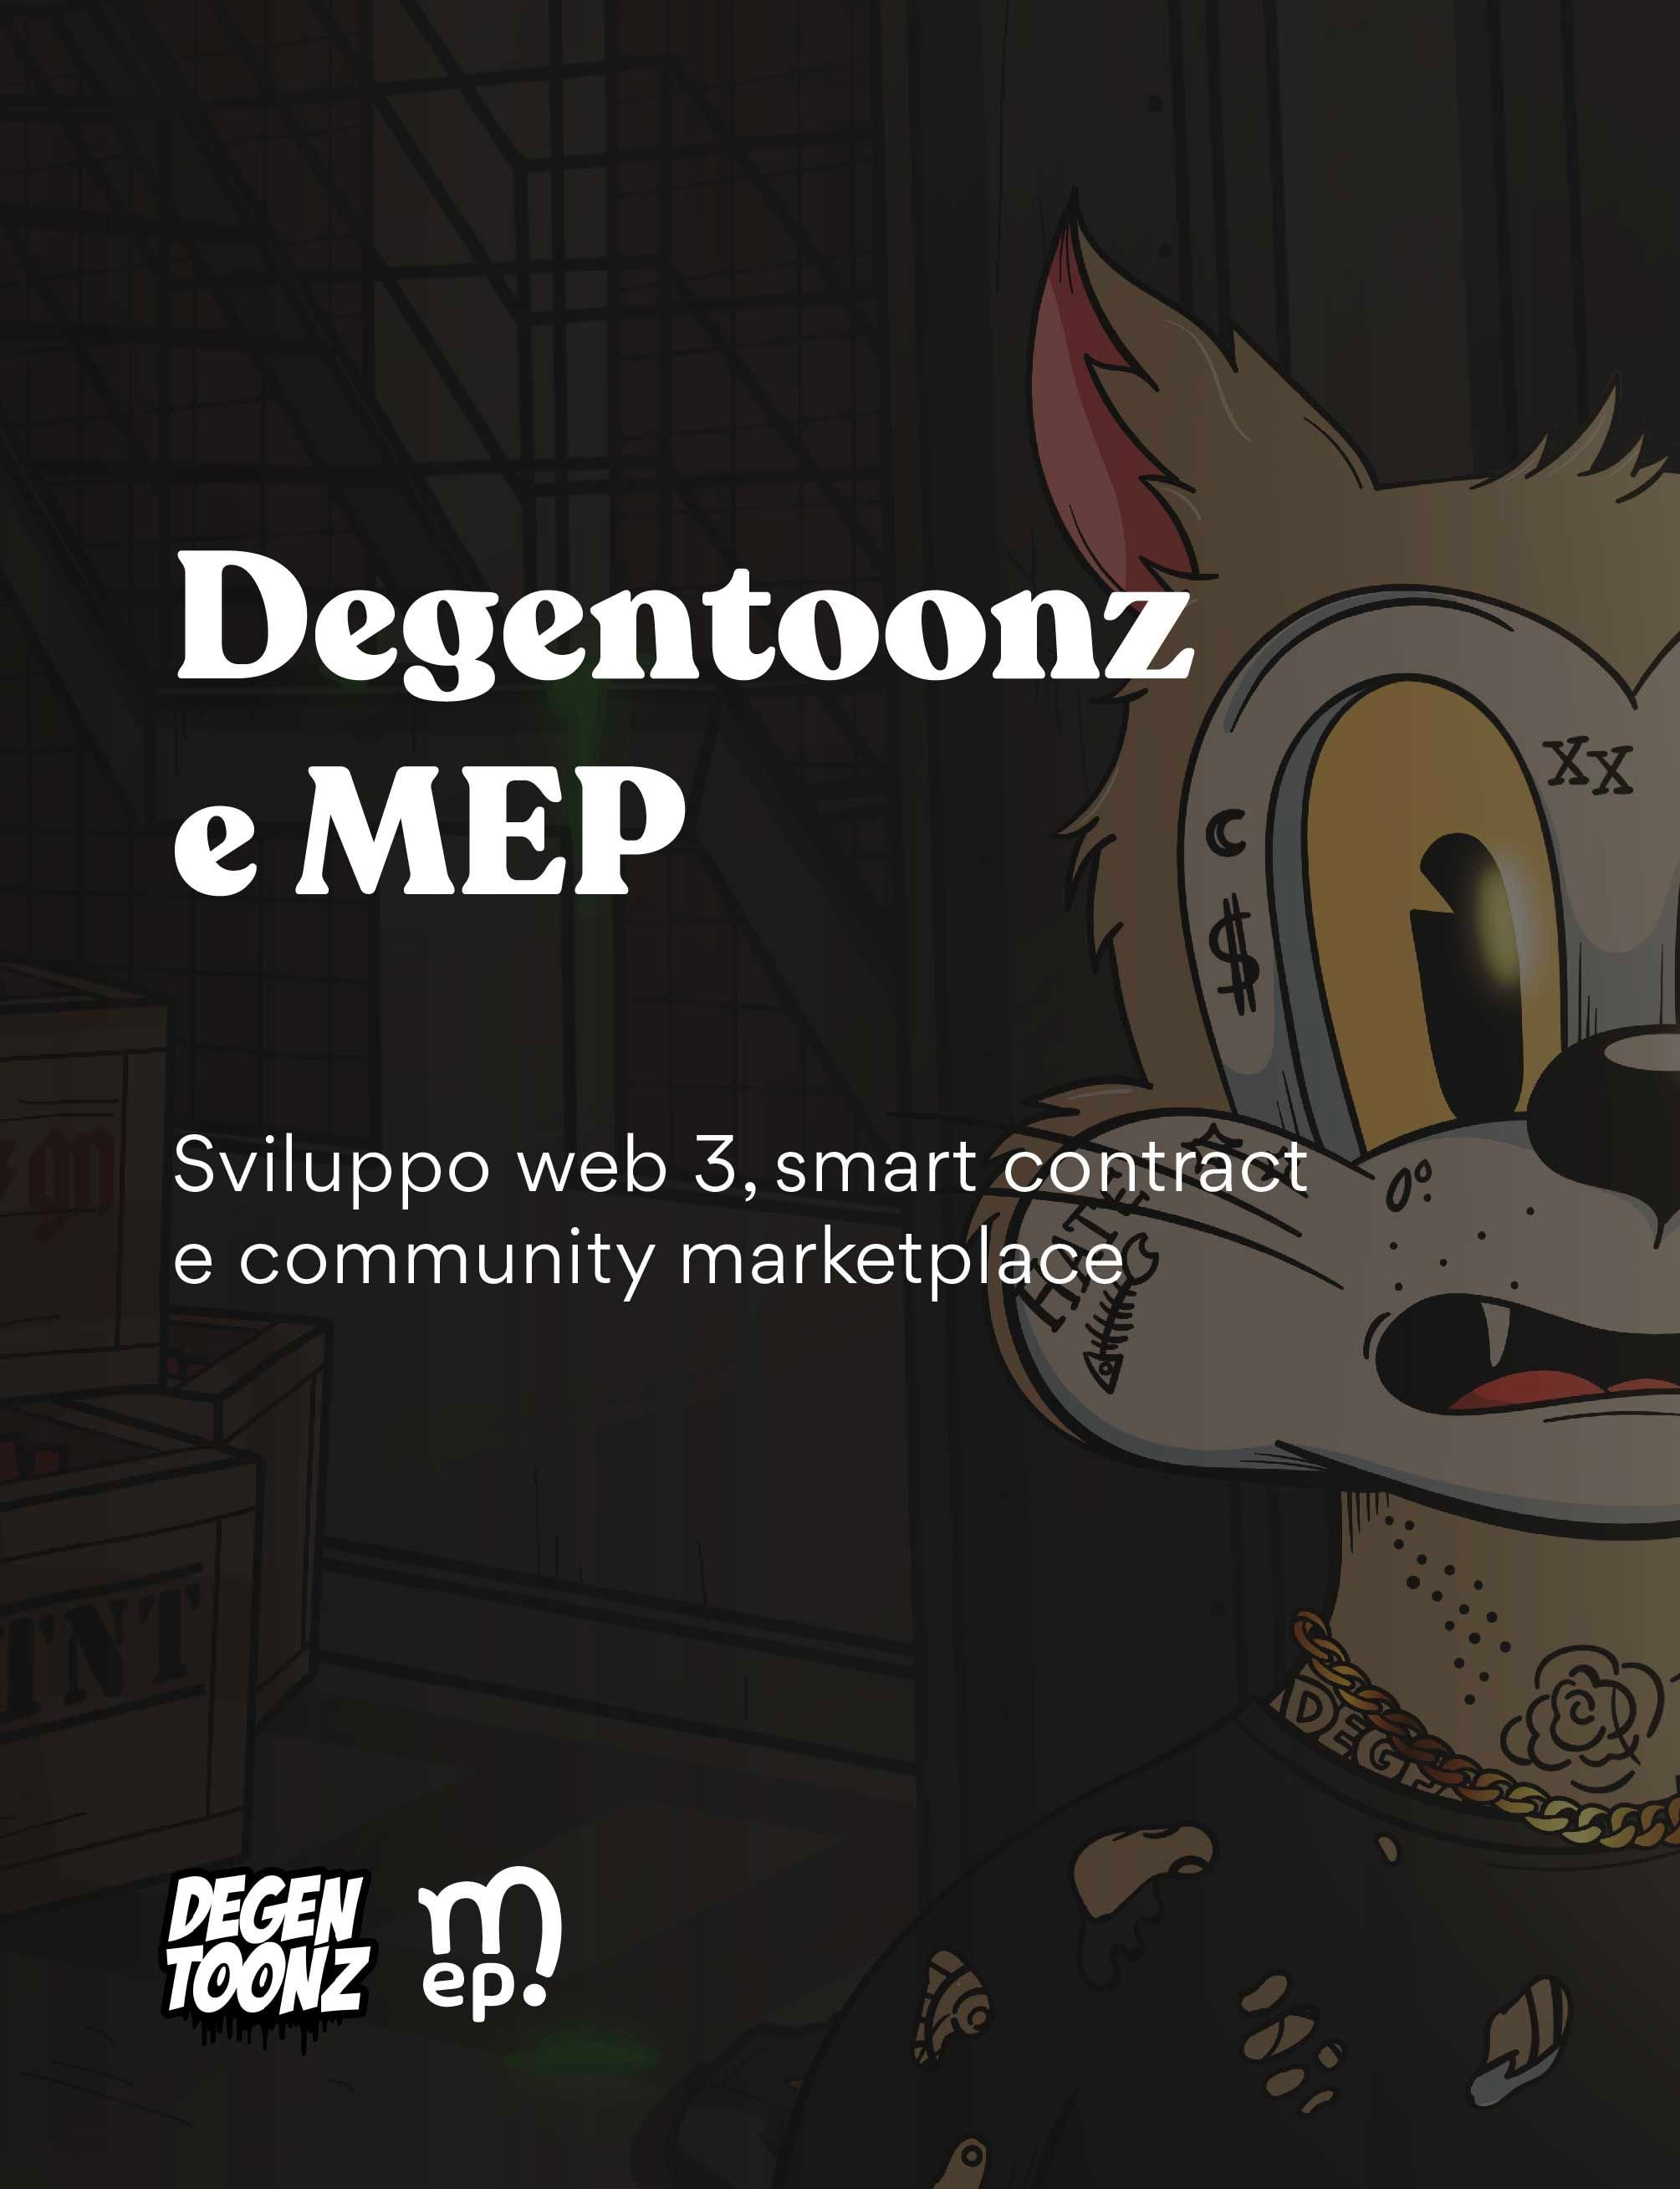 DegenToonz e MEP